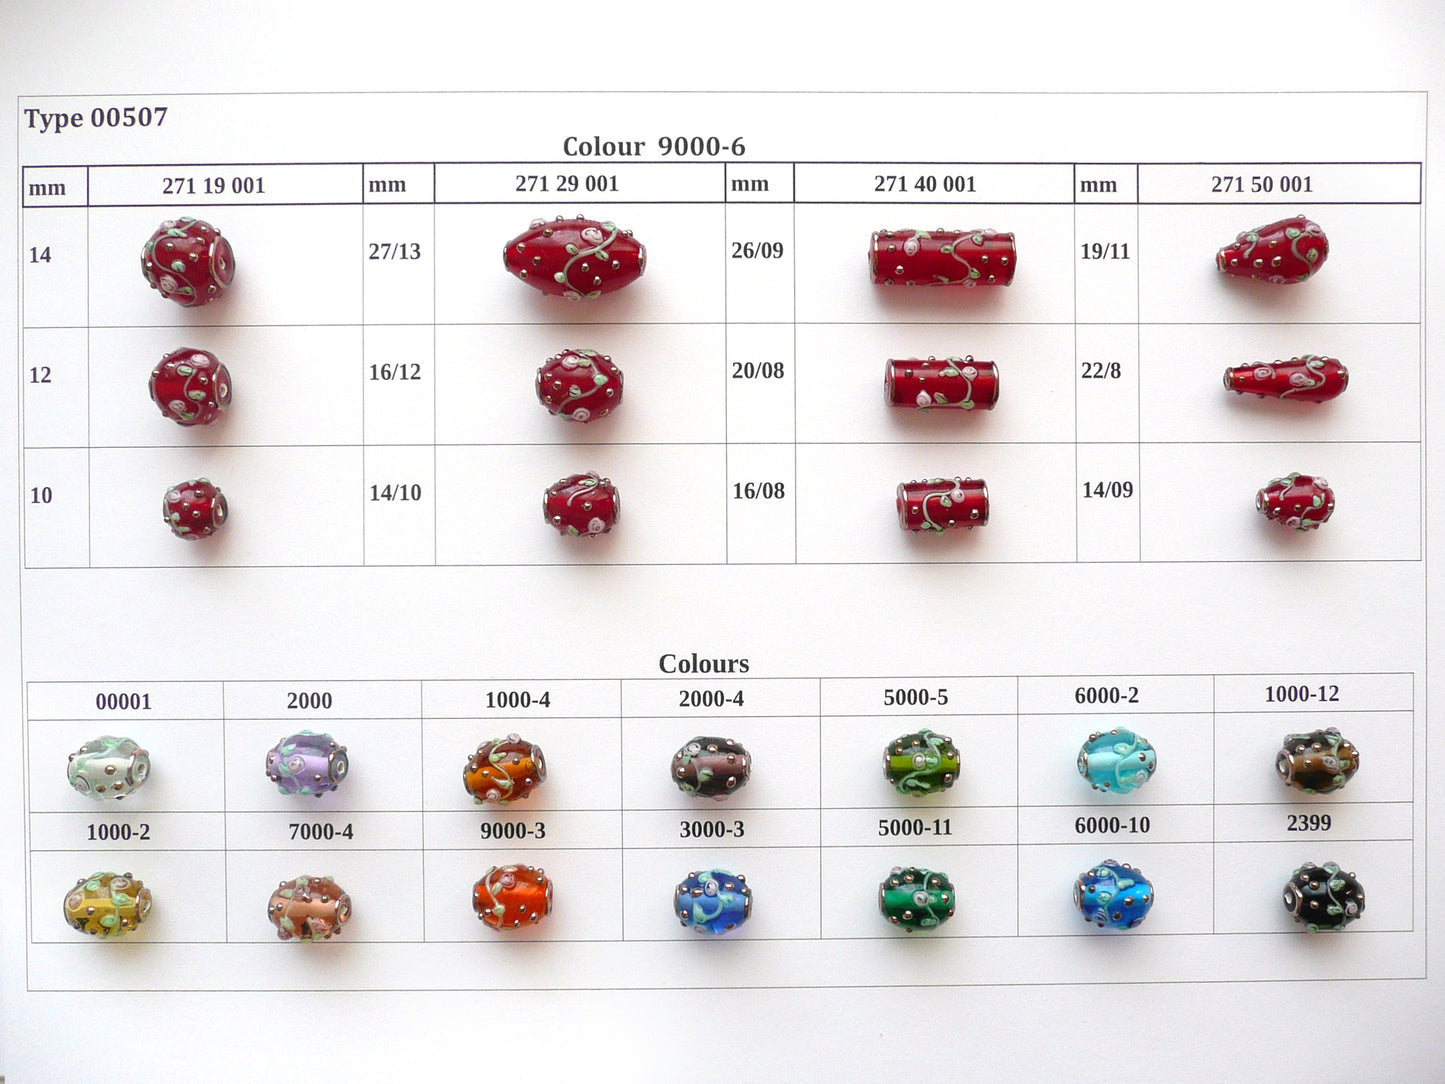 30 pcs Lampwork Beads 507 / Cylinder (271-40-001), Handmade, Preciosa Glass, Czech Republic